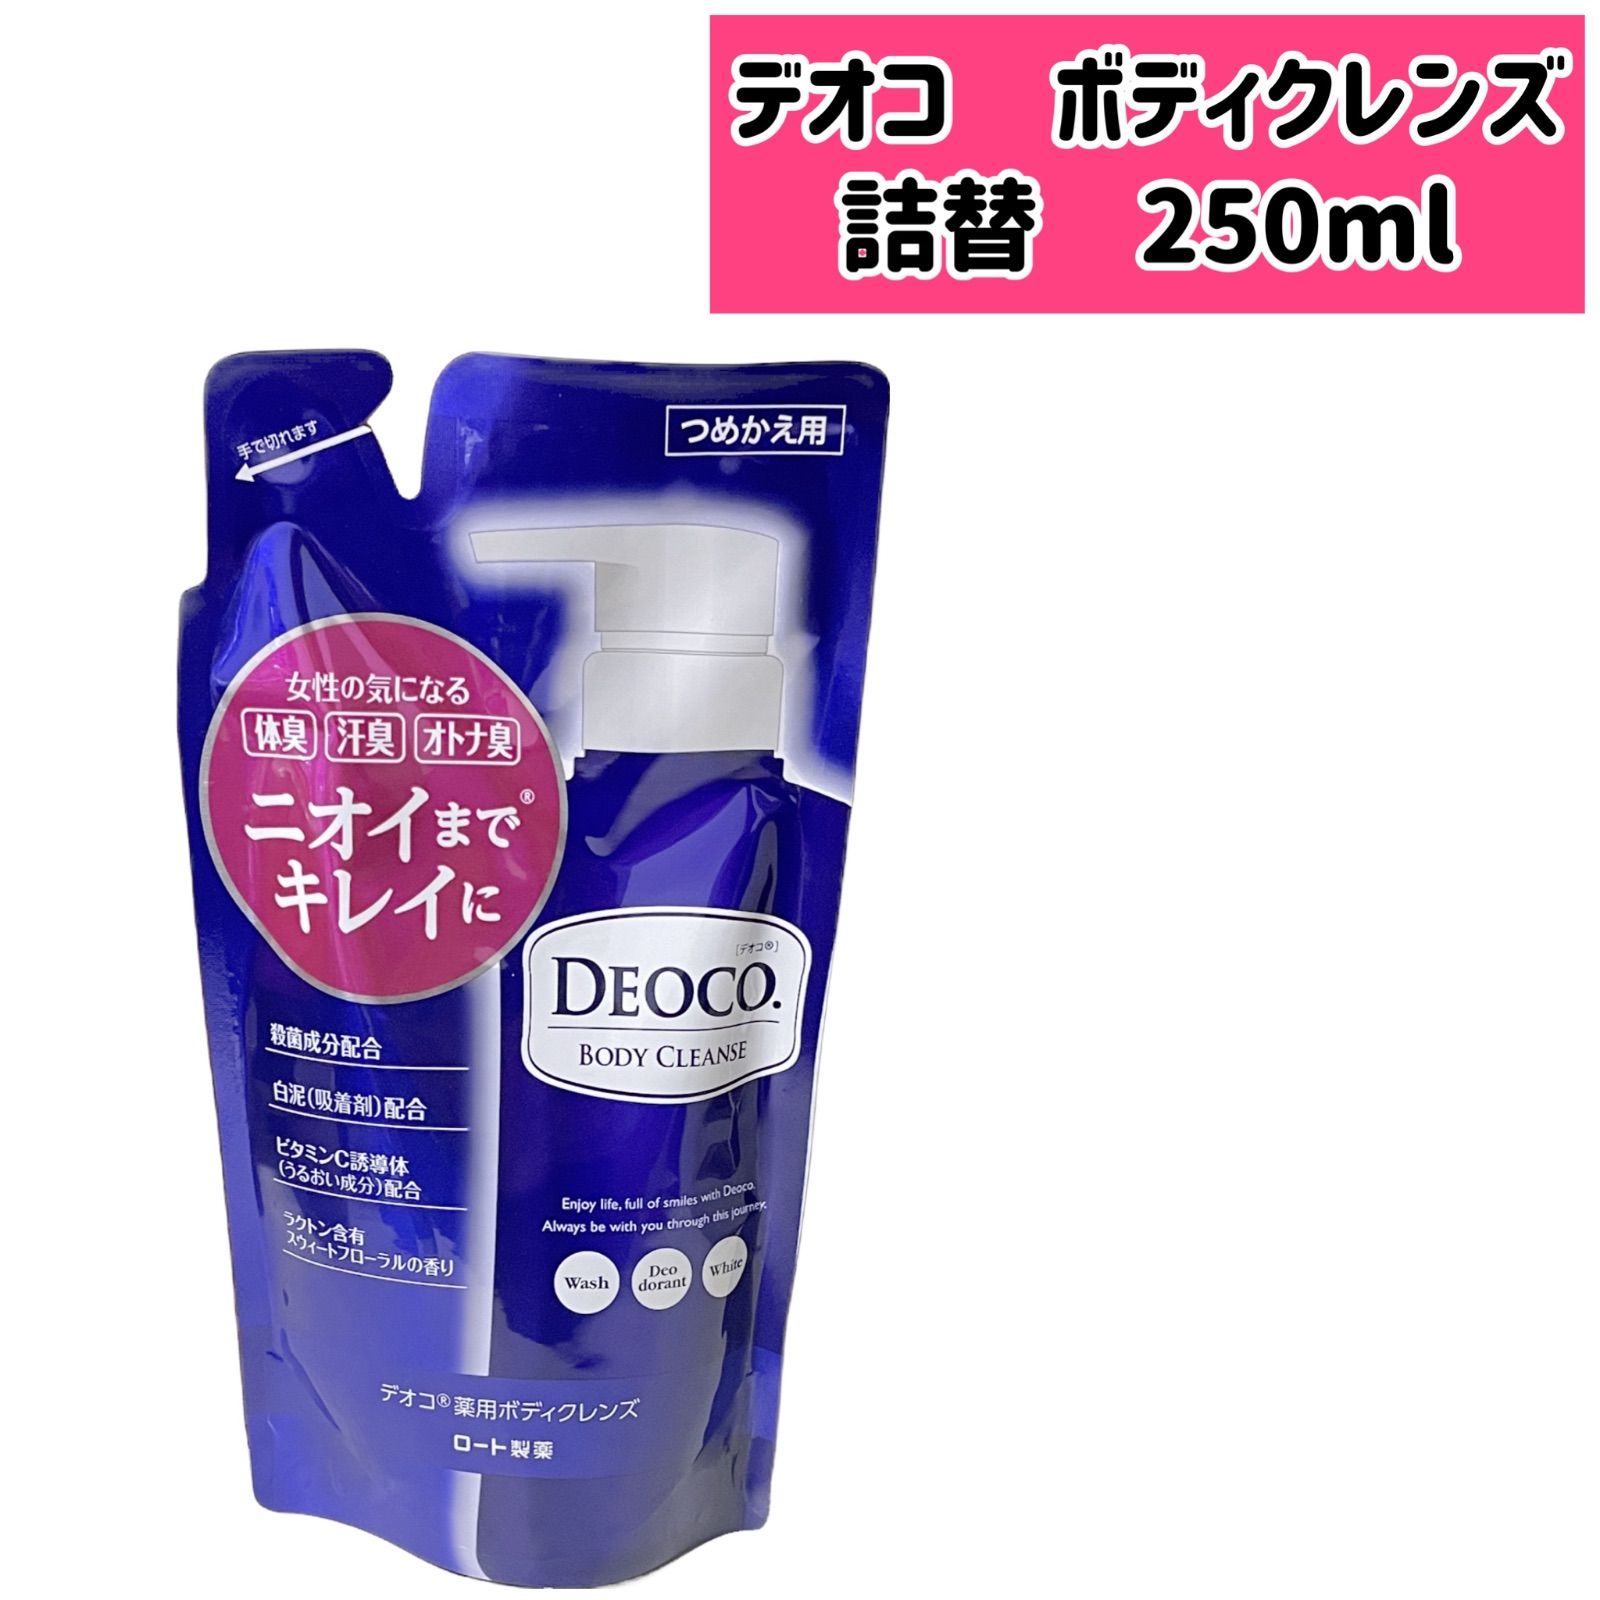 デオコ 薬用ボディクレンズ 250ml DEOCO ロート製薬 詰替用 - メルカリ